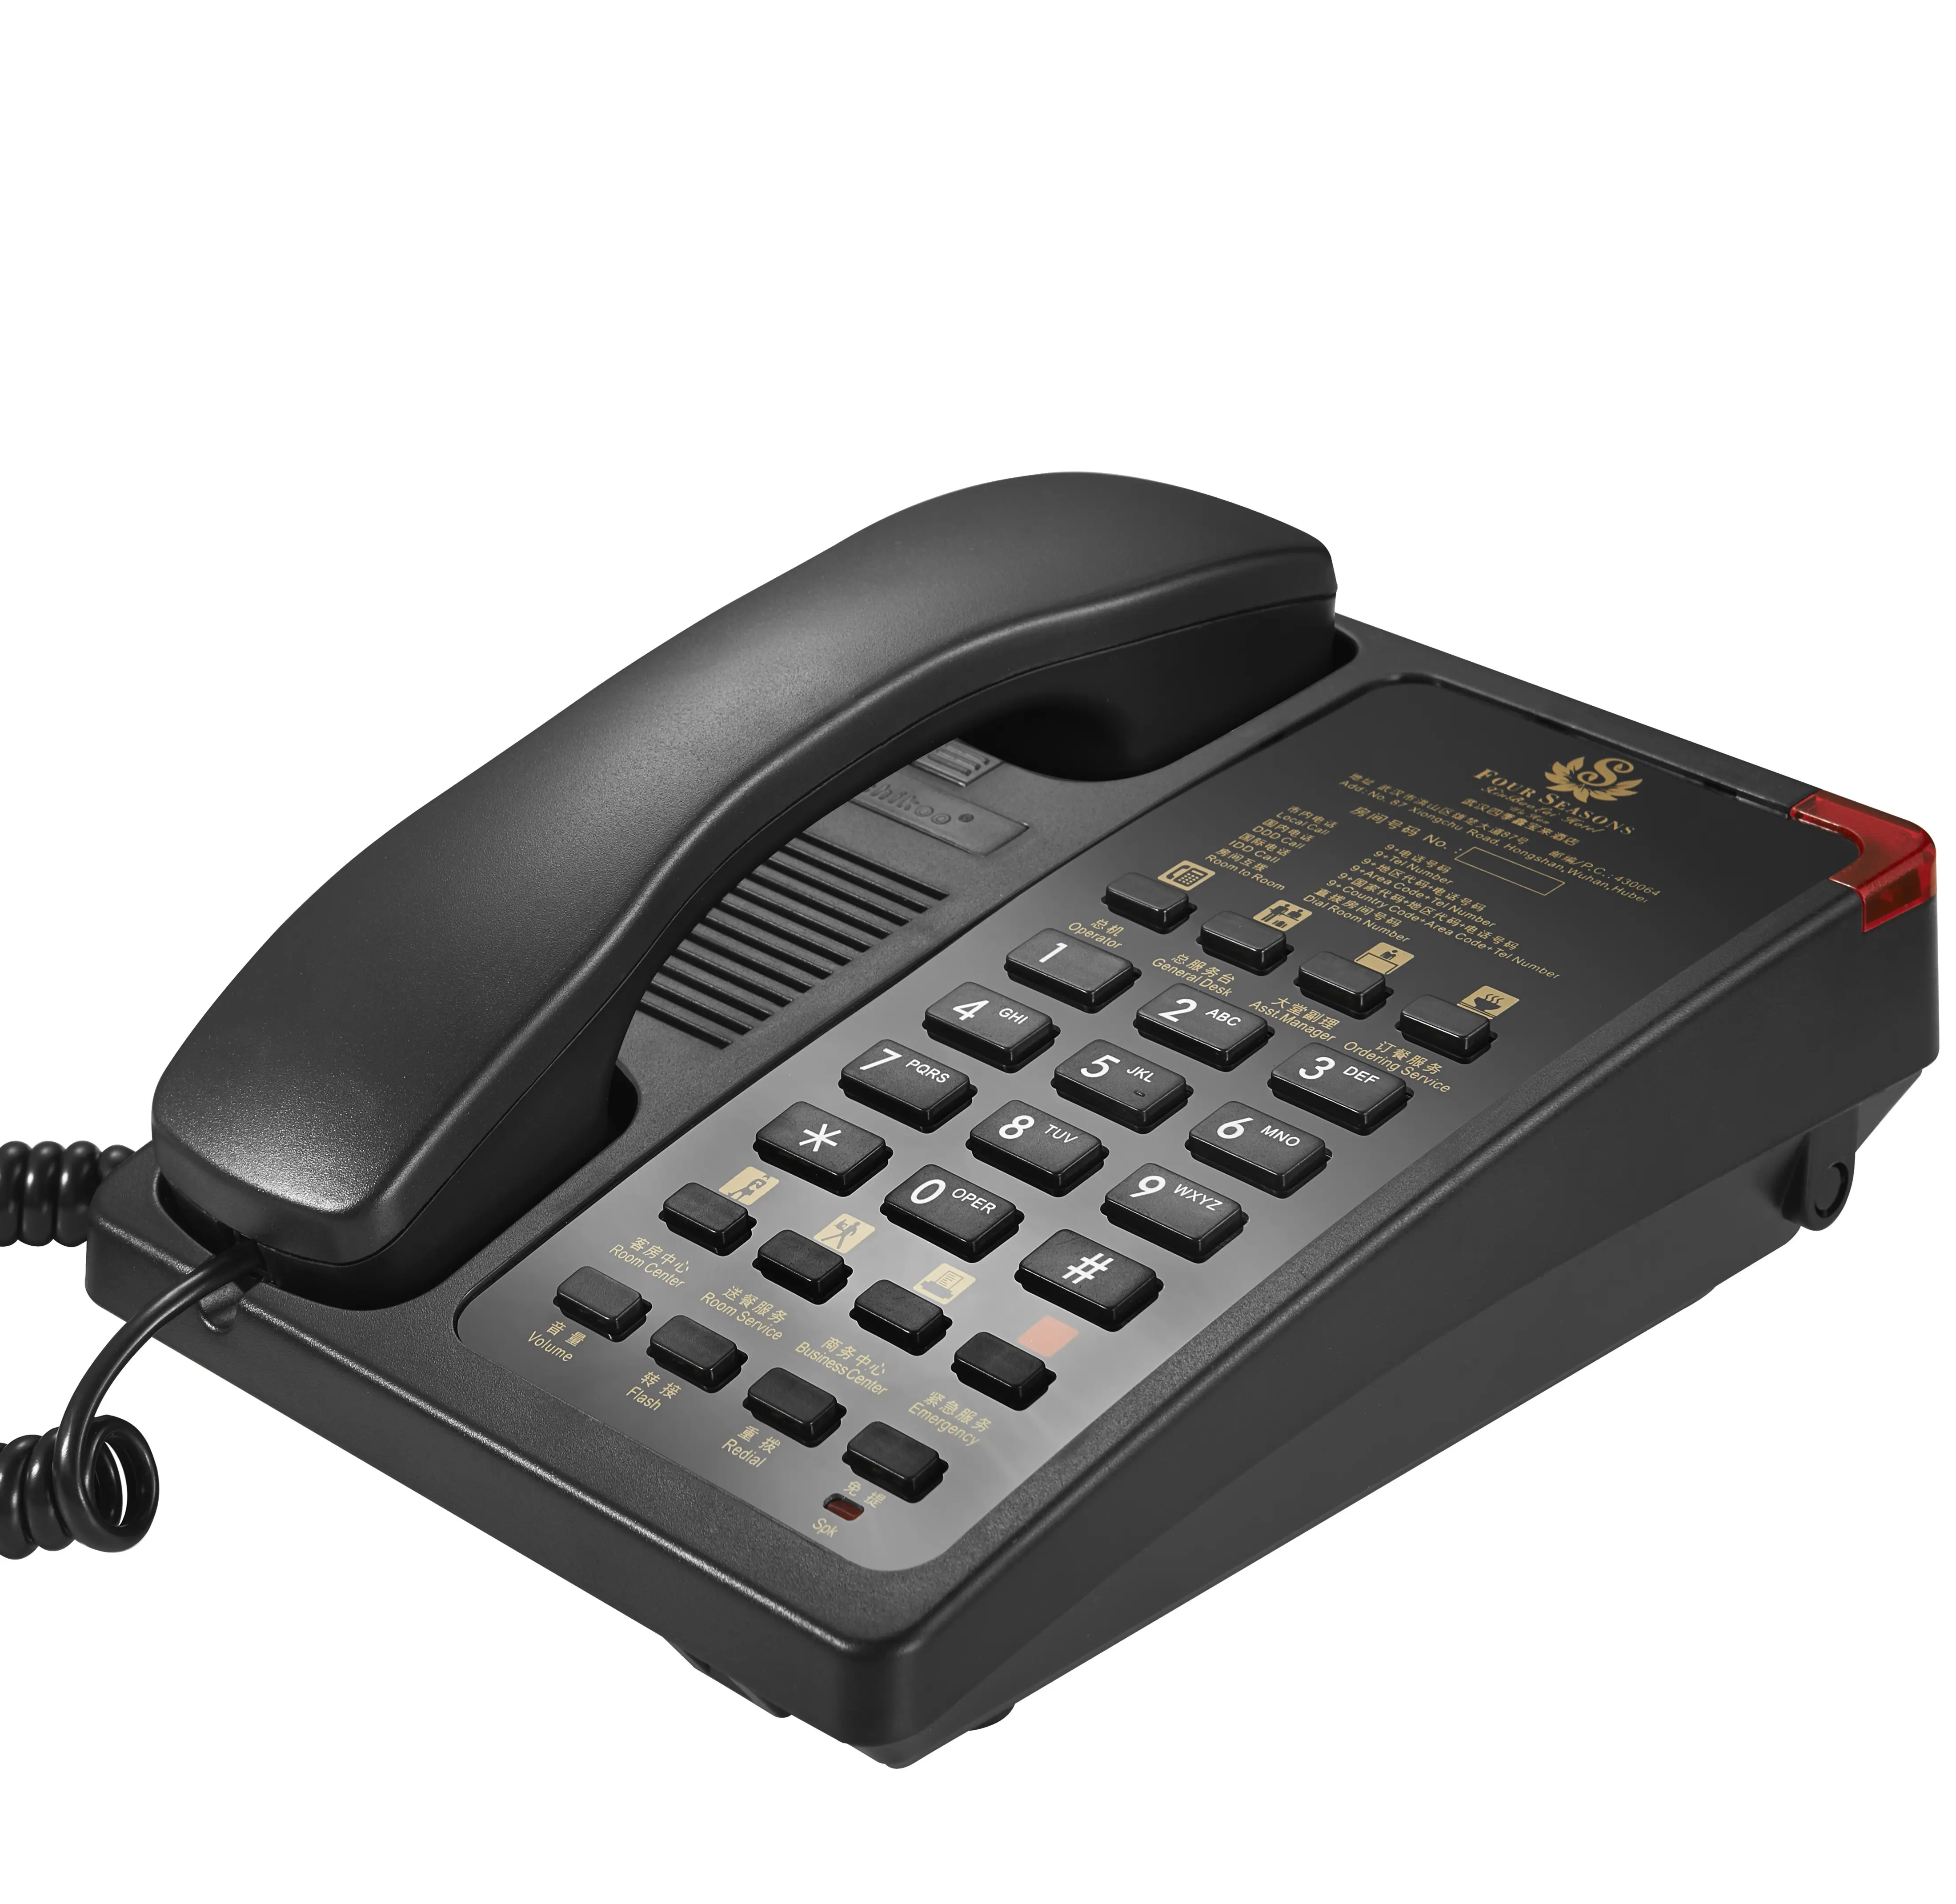 Sistema de troca de telefone analógico, botão grande de alta qualidade, jogo com qualquer pabx